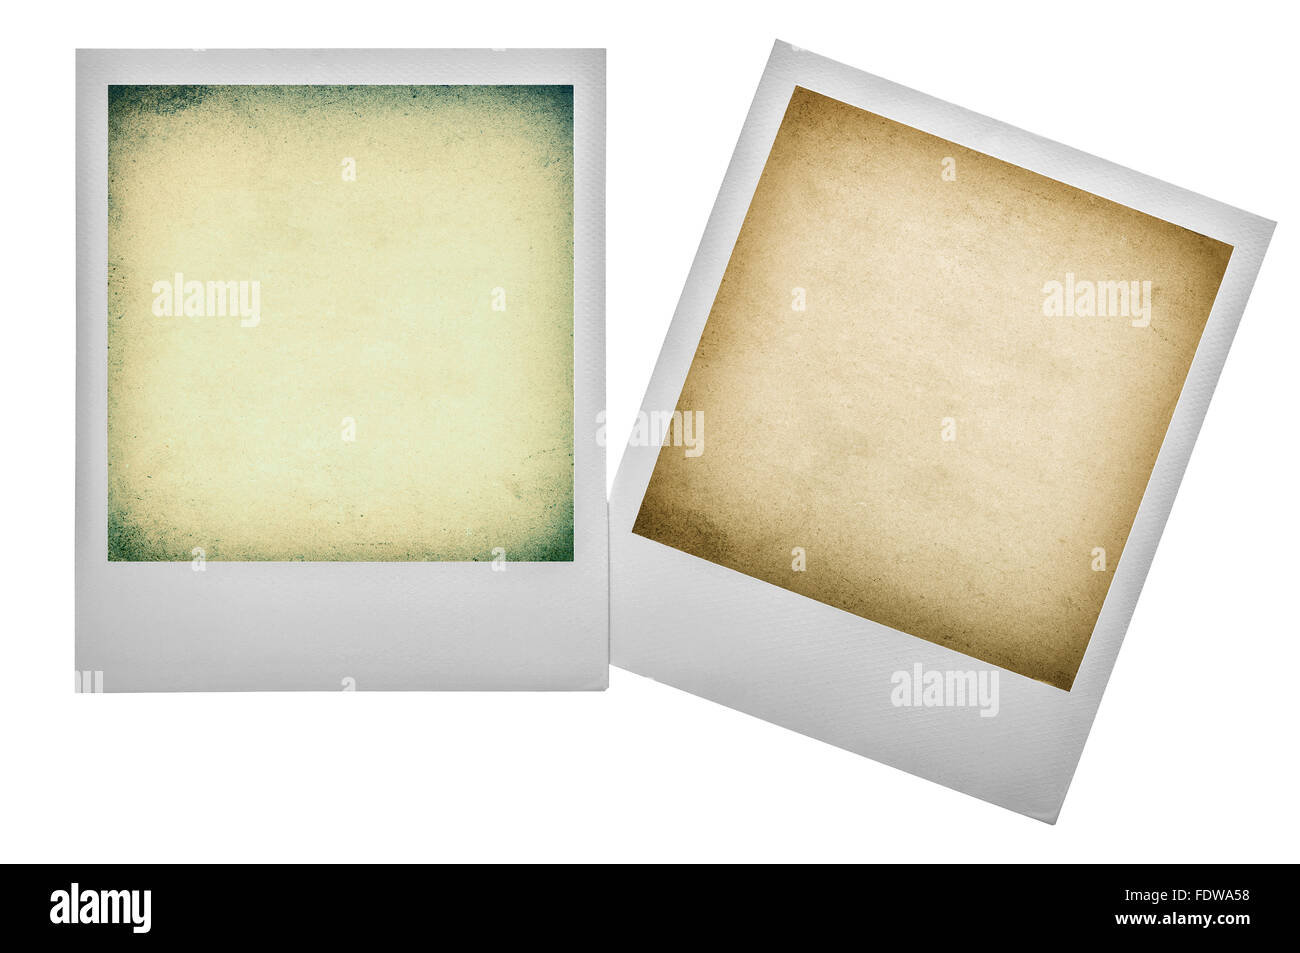 Vecchio effetto polaroid immagini e fotografie stock ad alta risoluzione -  Alamy